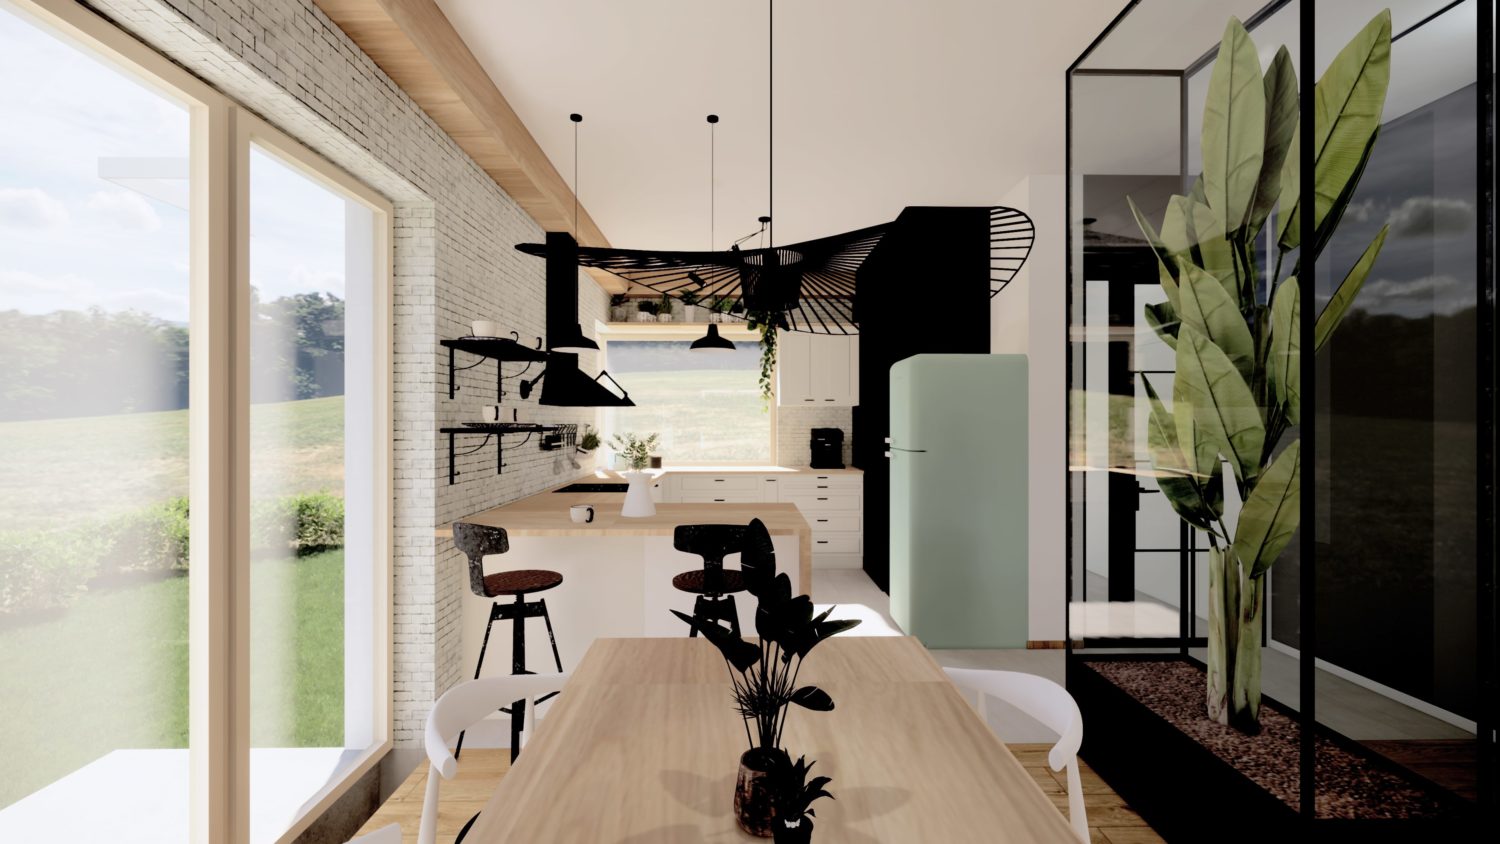 Piętrowy dom o bardzo wygodnym rozkładzie dla rodziny. Jasne wnętrza z elementami loftowymi i drewnem.